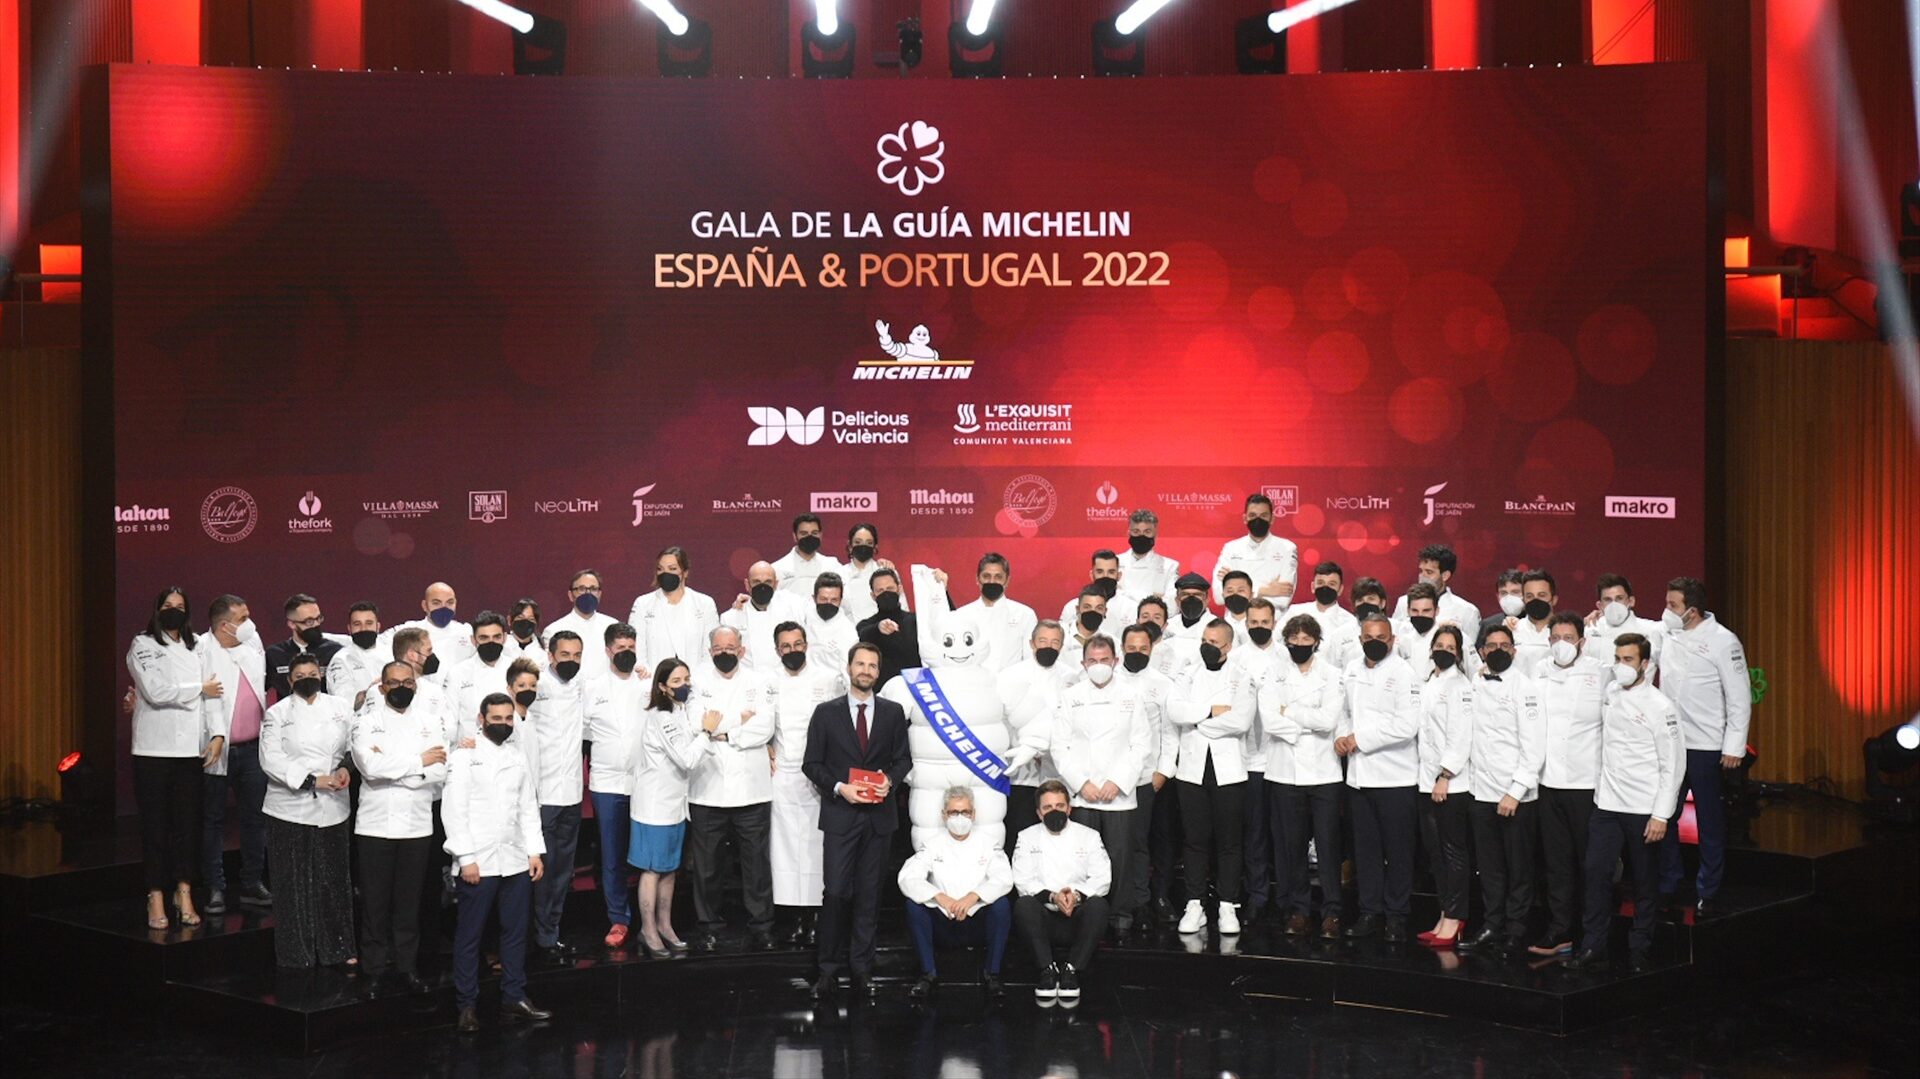 La gala de la Guía Michelin 2023: ¿dónde se celebra? ¿Nuevo éxito para Dabiz Muñoz?